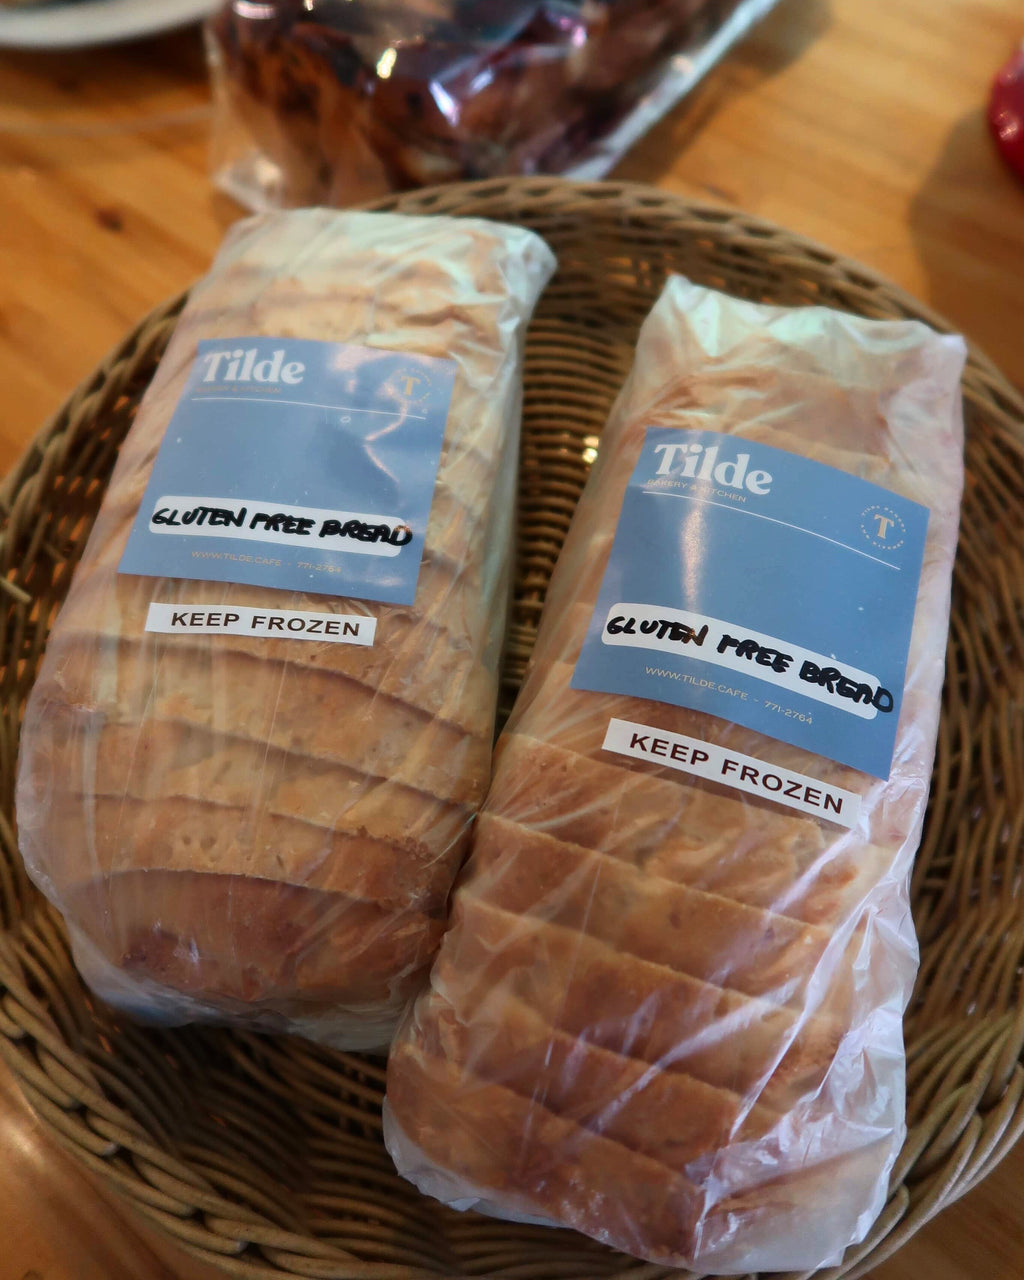 Frozen Gluten-Free Bread